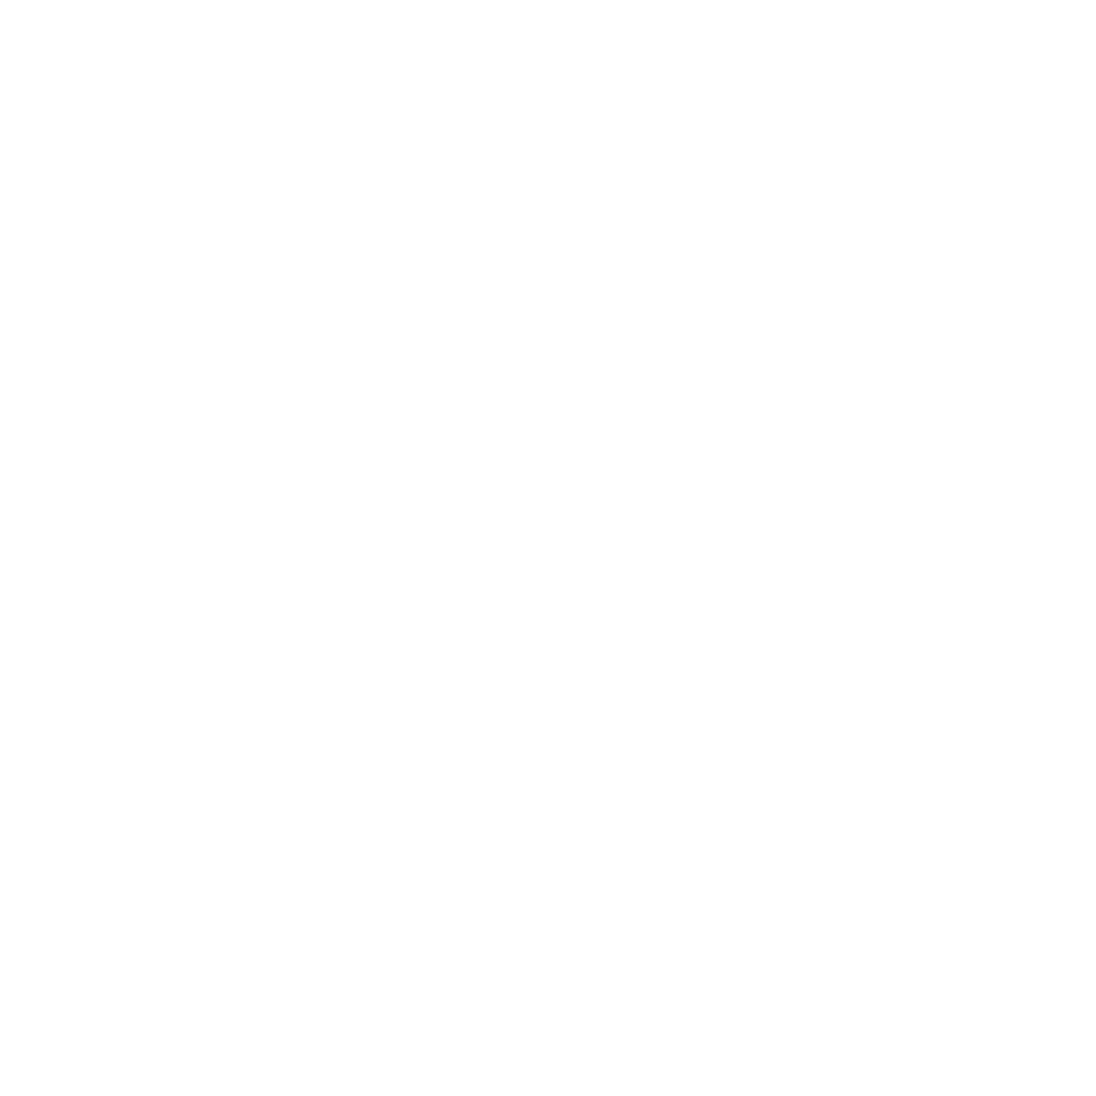 Hair by Ashleigh